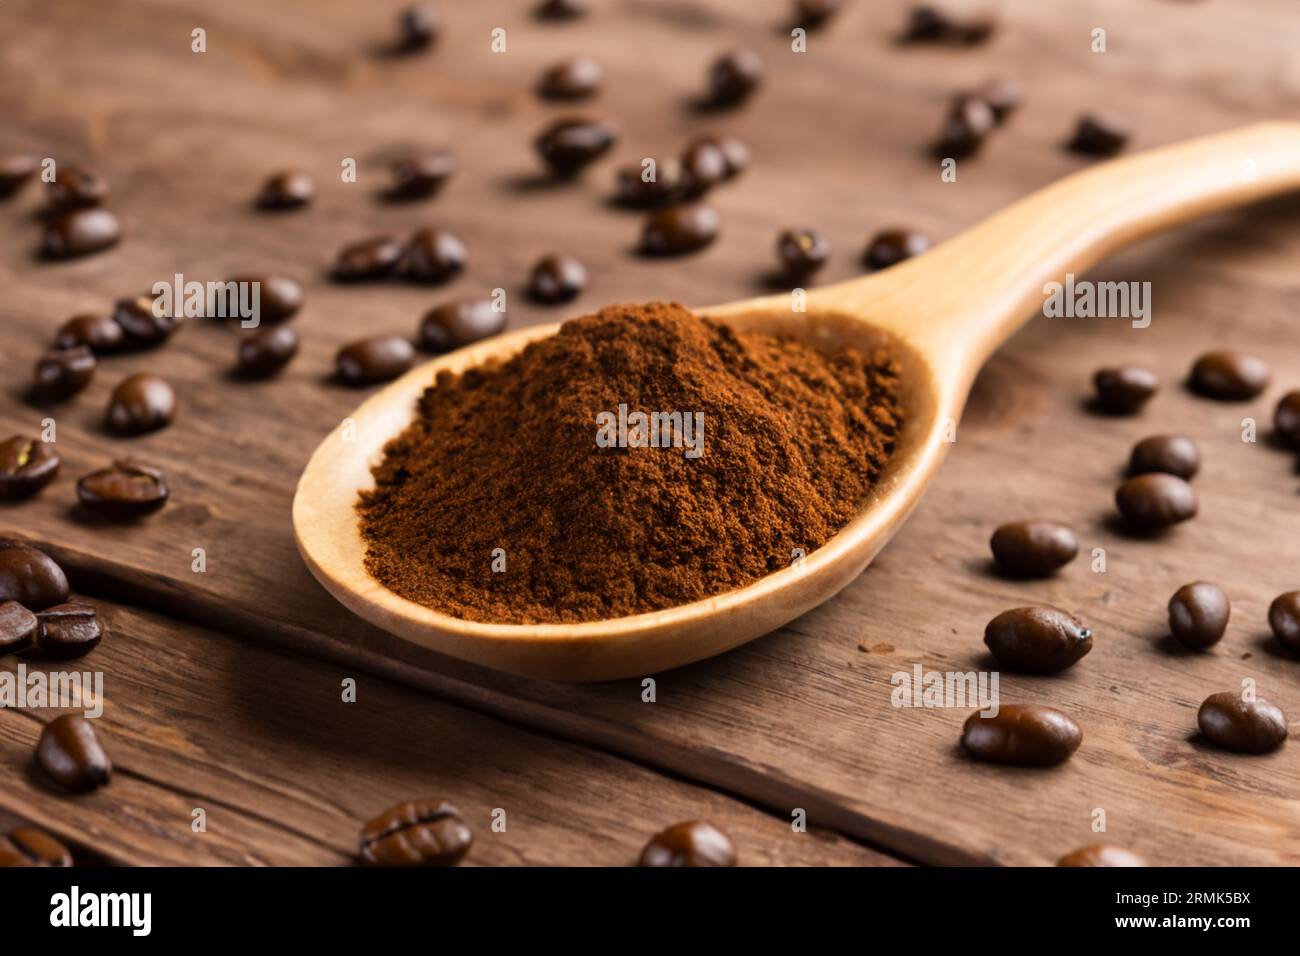 cuillère avec de la poudre et des grains de café sur une vieille cuillère en bois Banque D'Images